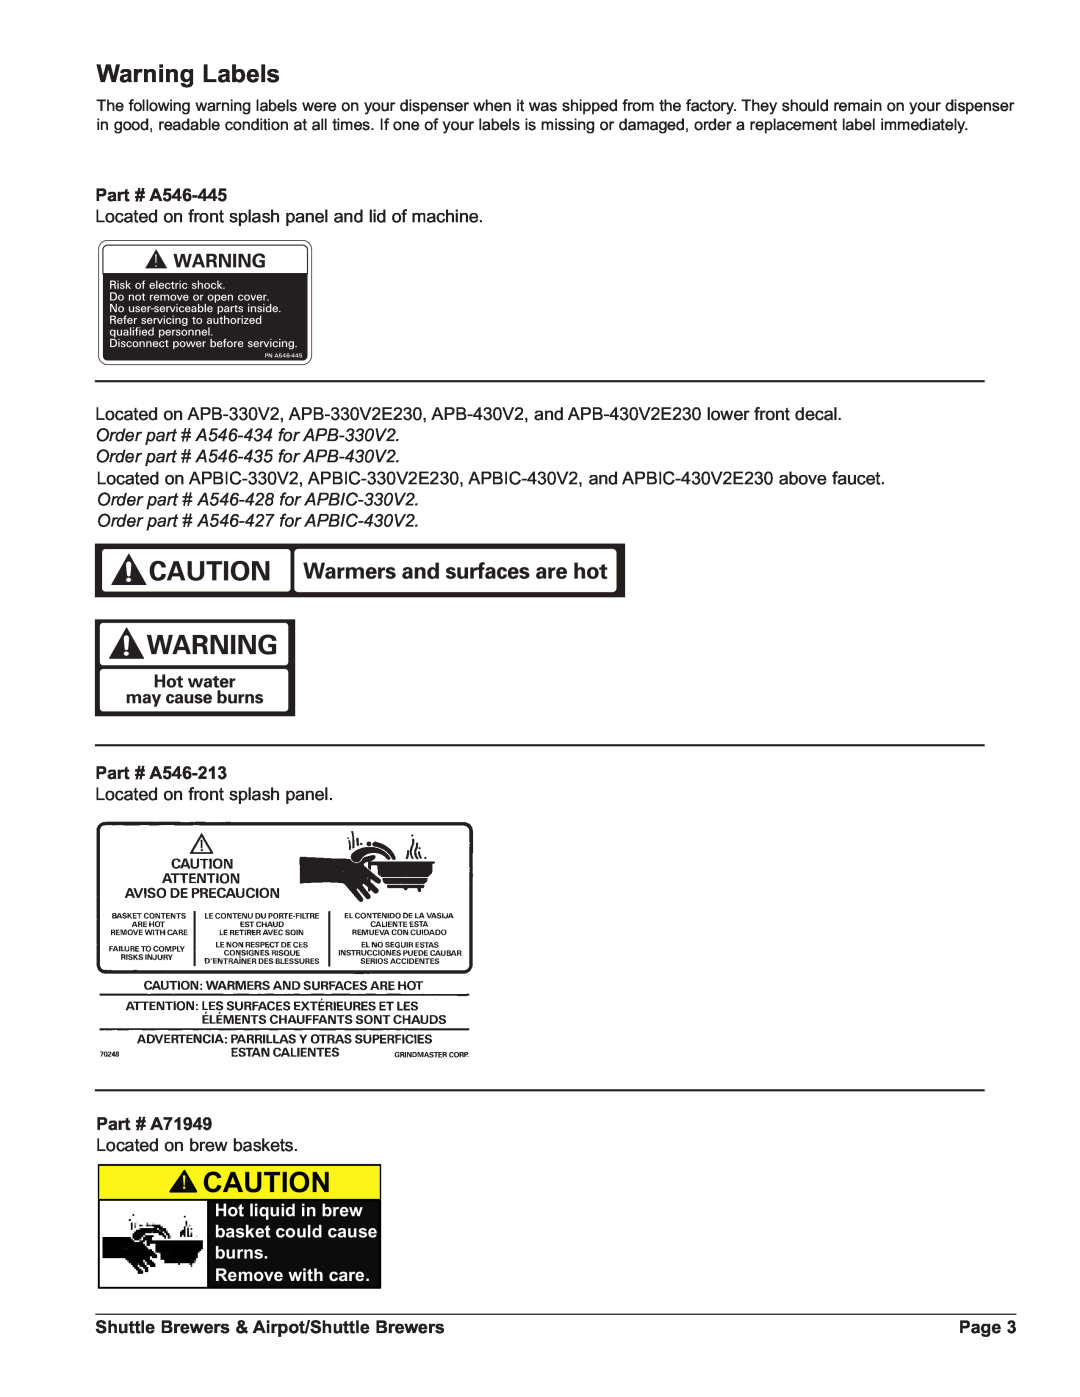 Grindmaster PBIC-430V2E230, APBVSA-330V2 Warning Labels, A546-445, Order part # A546-435 for APB-430V2, A546-213, A71949 